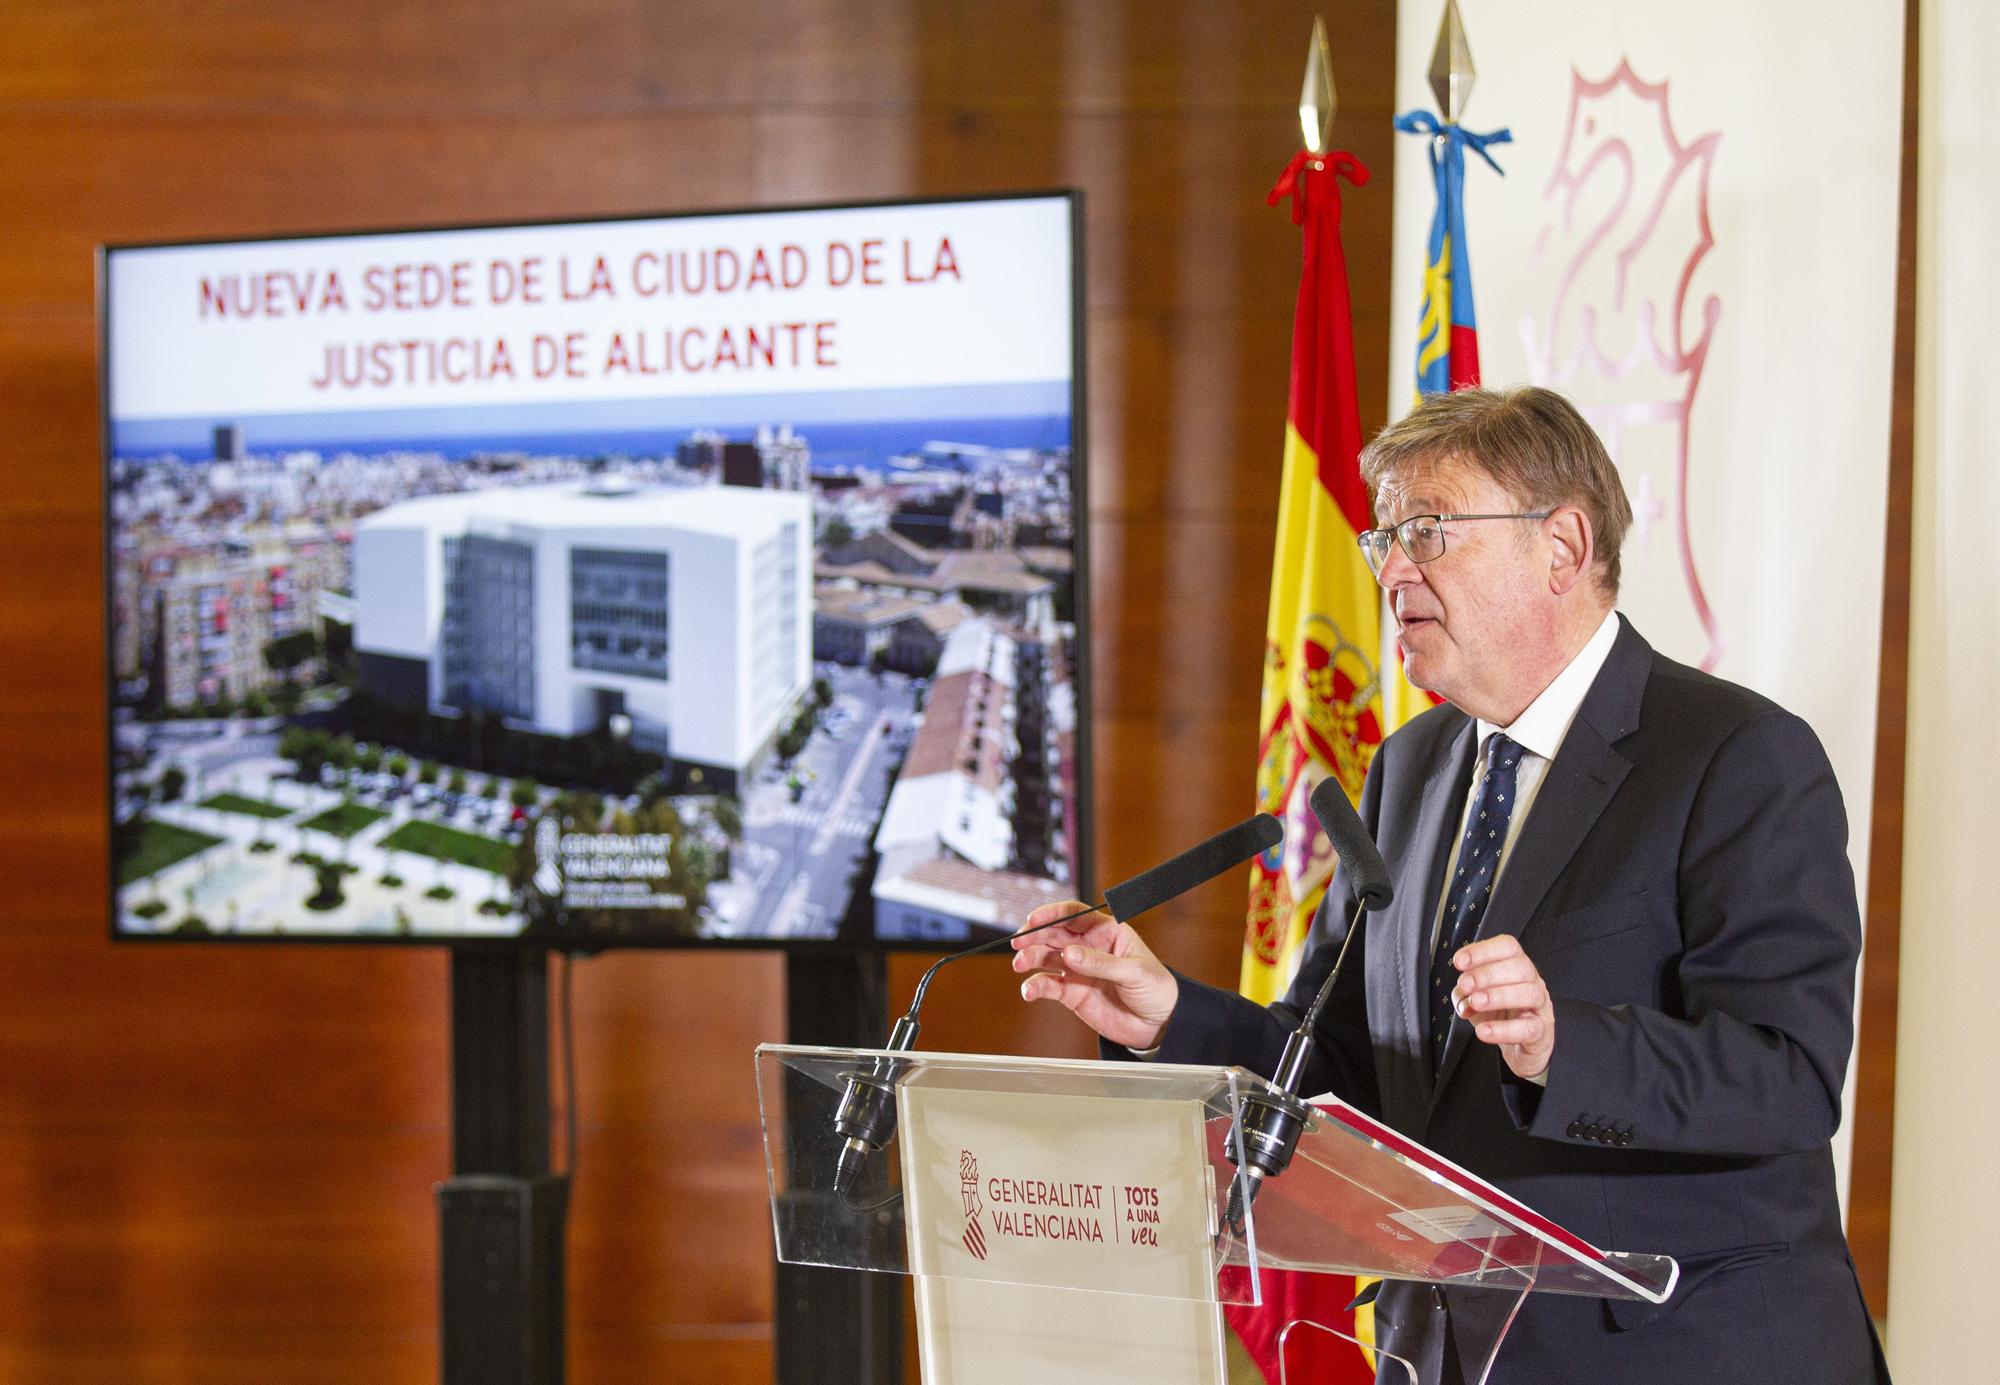 Presentación del proyecto de la Ciudad de la Justicia de Alicante